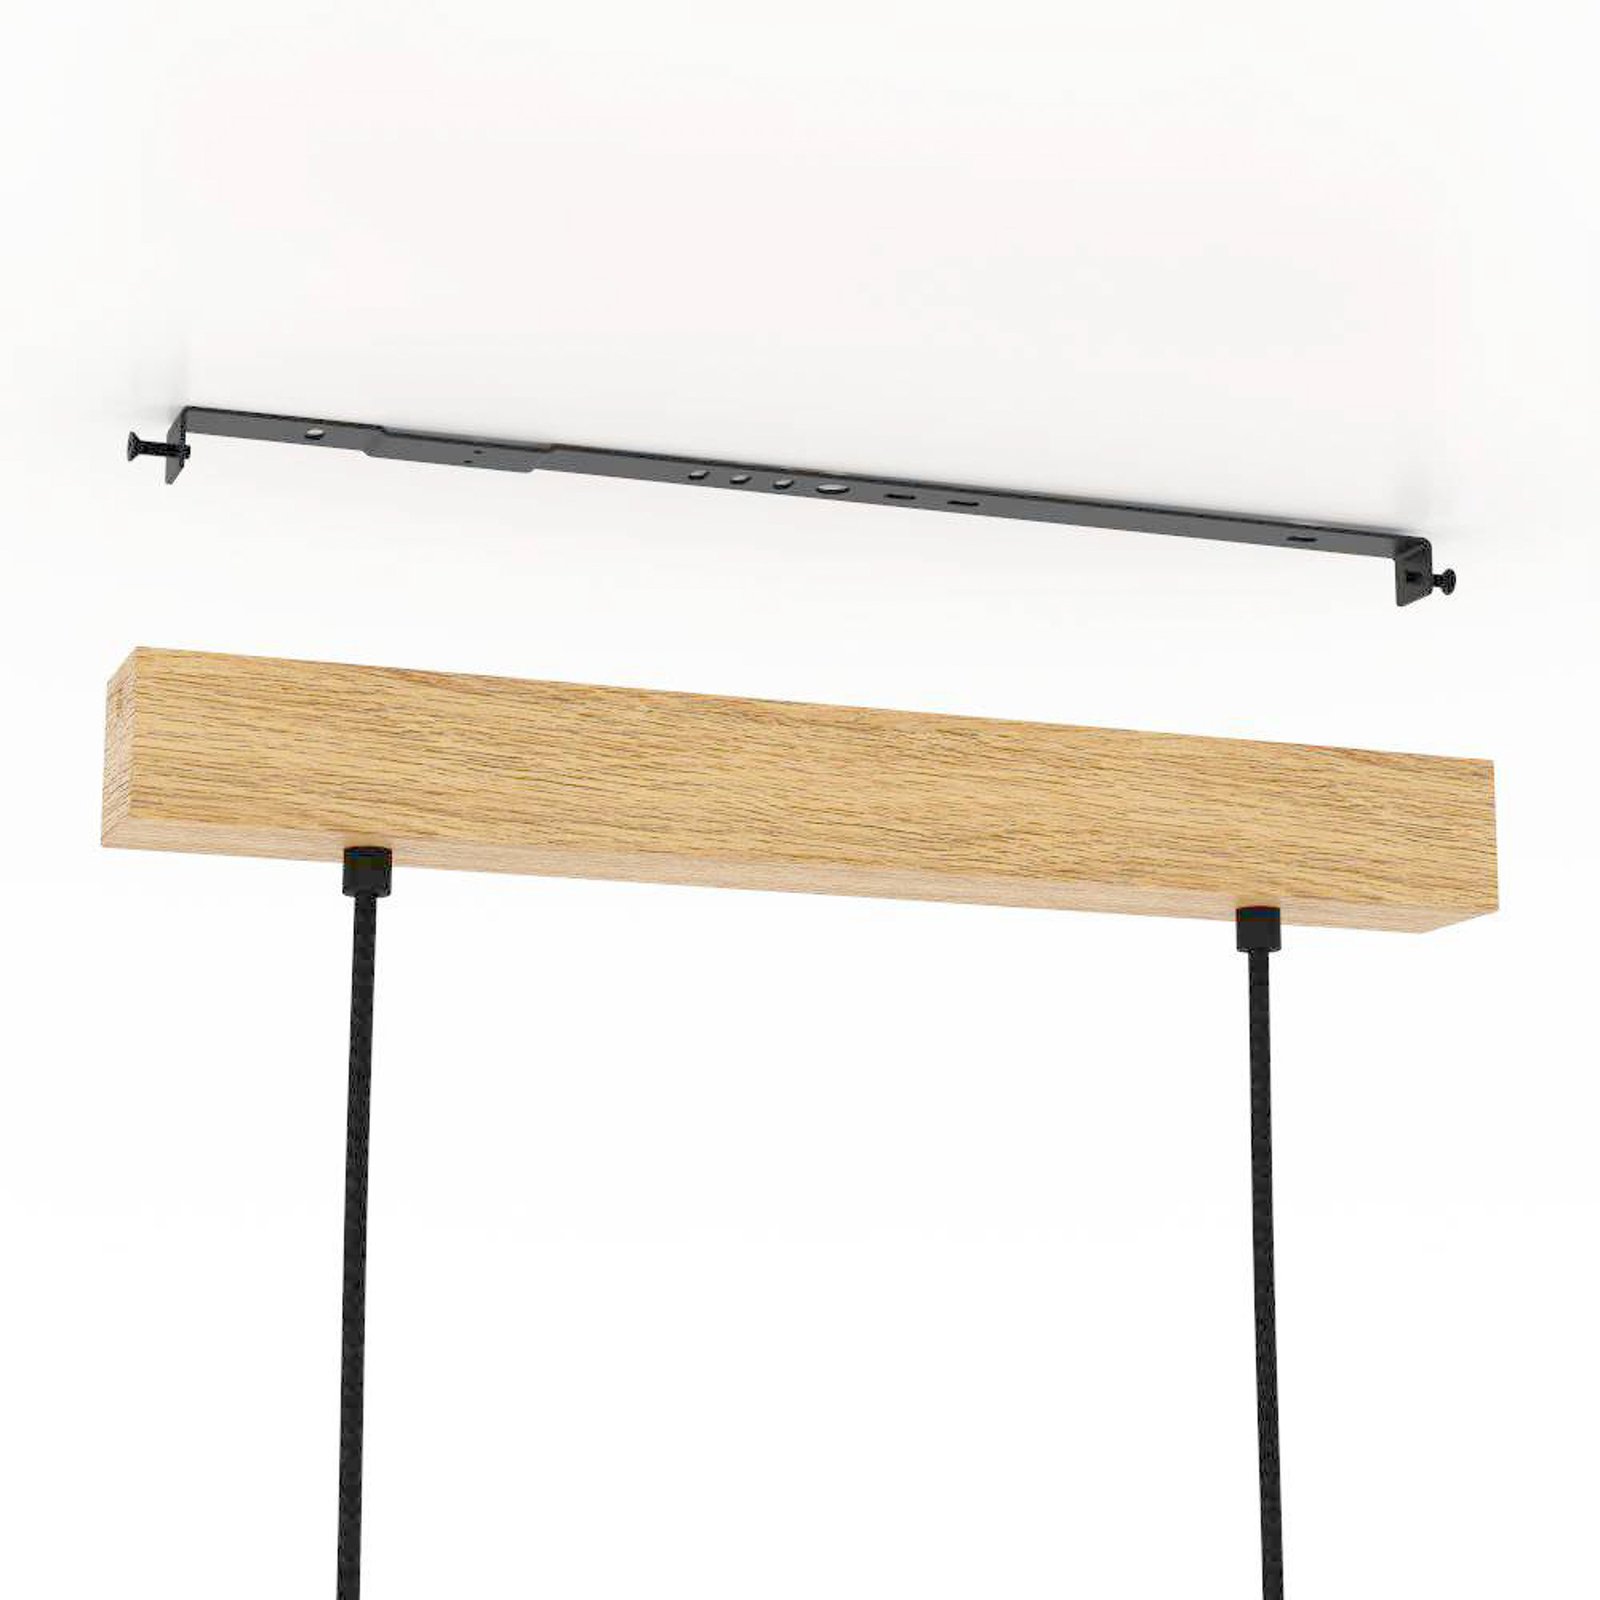 Castralvo hanglamp, lengte 97,5 cm, zwart, 3-lamps, stof